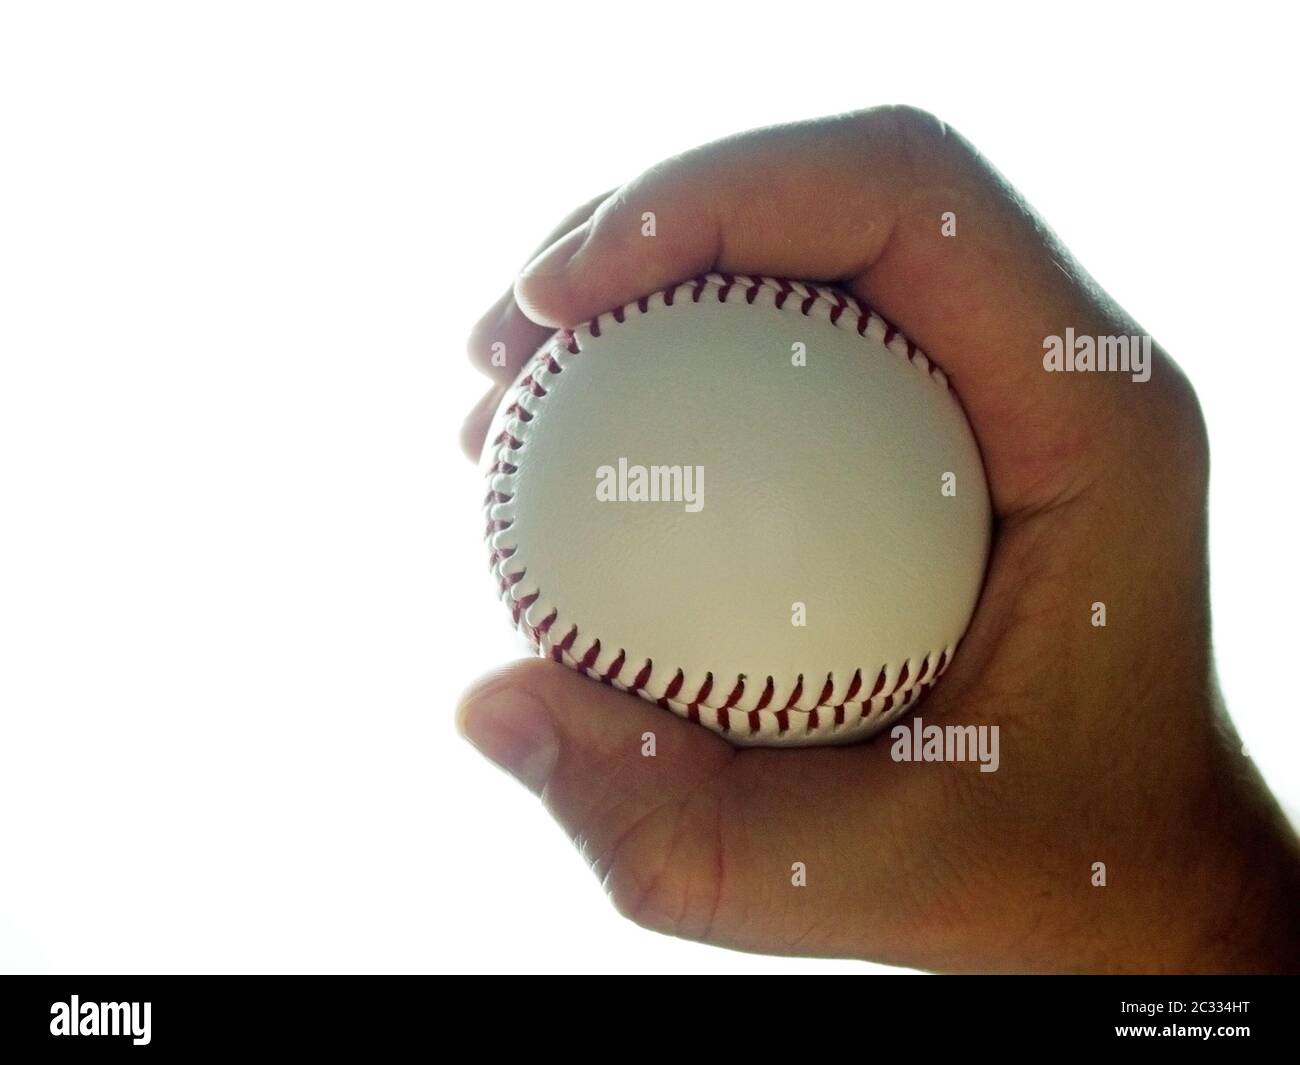 Pelota de béisbol en mano masculina sobre fondo blanco Foto de stock